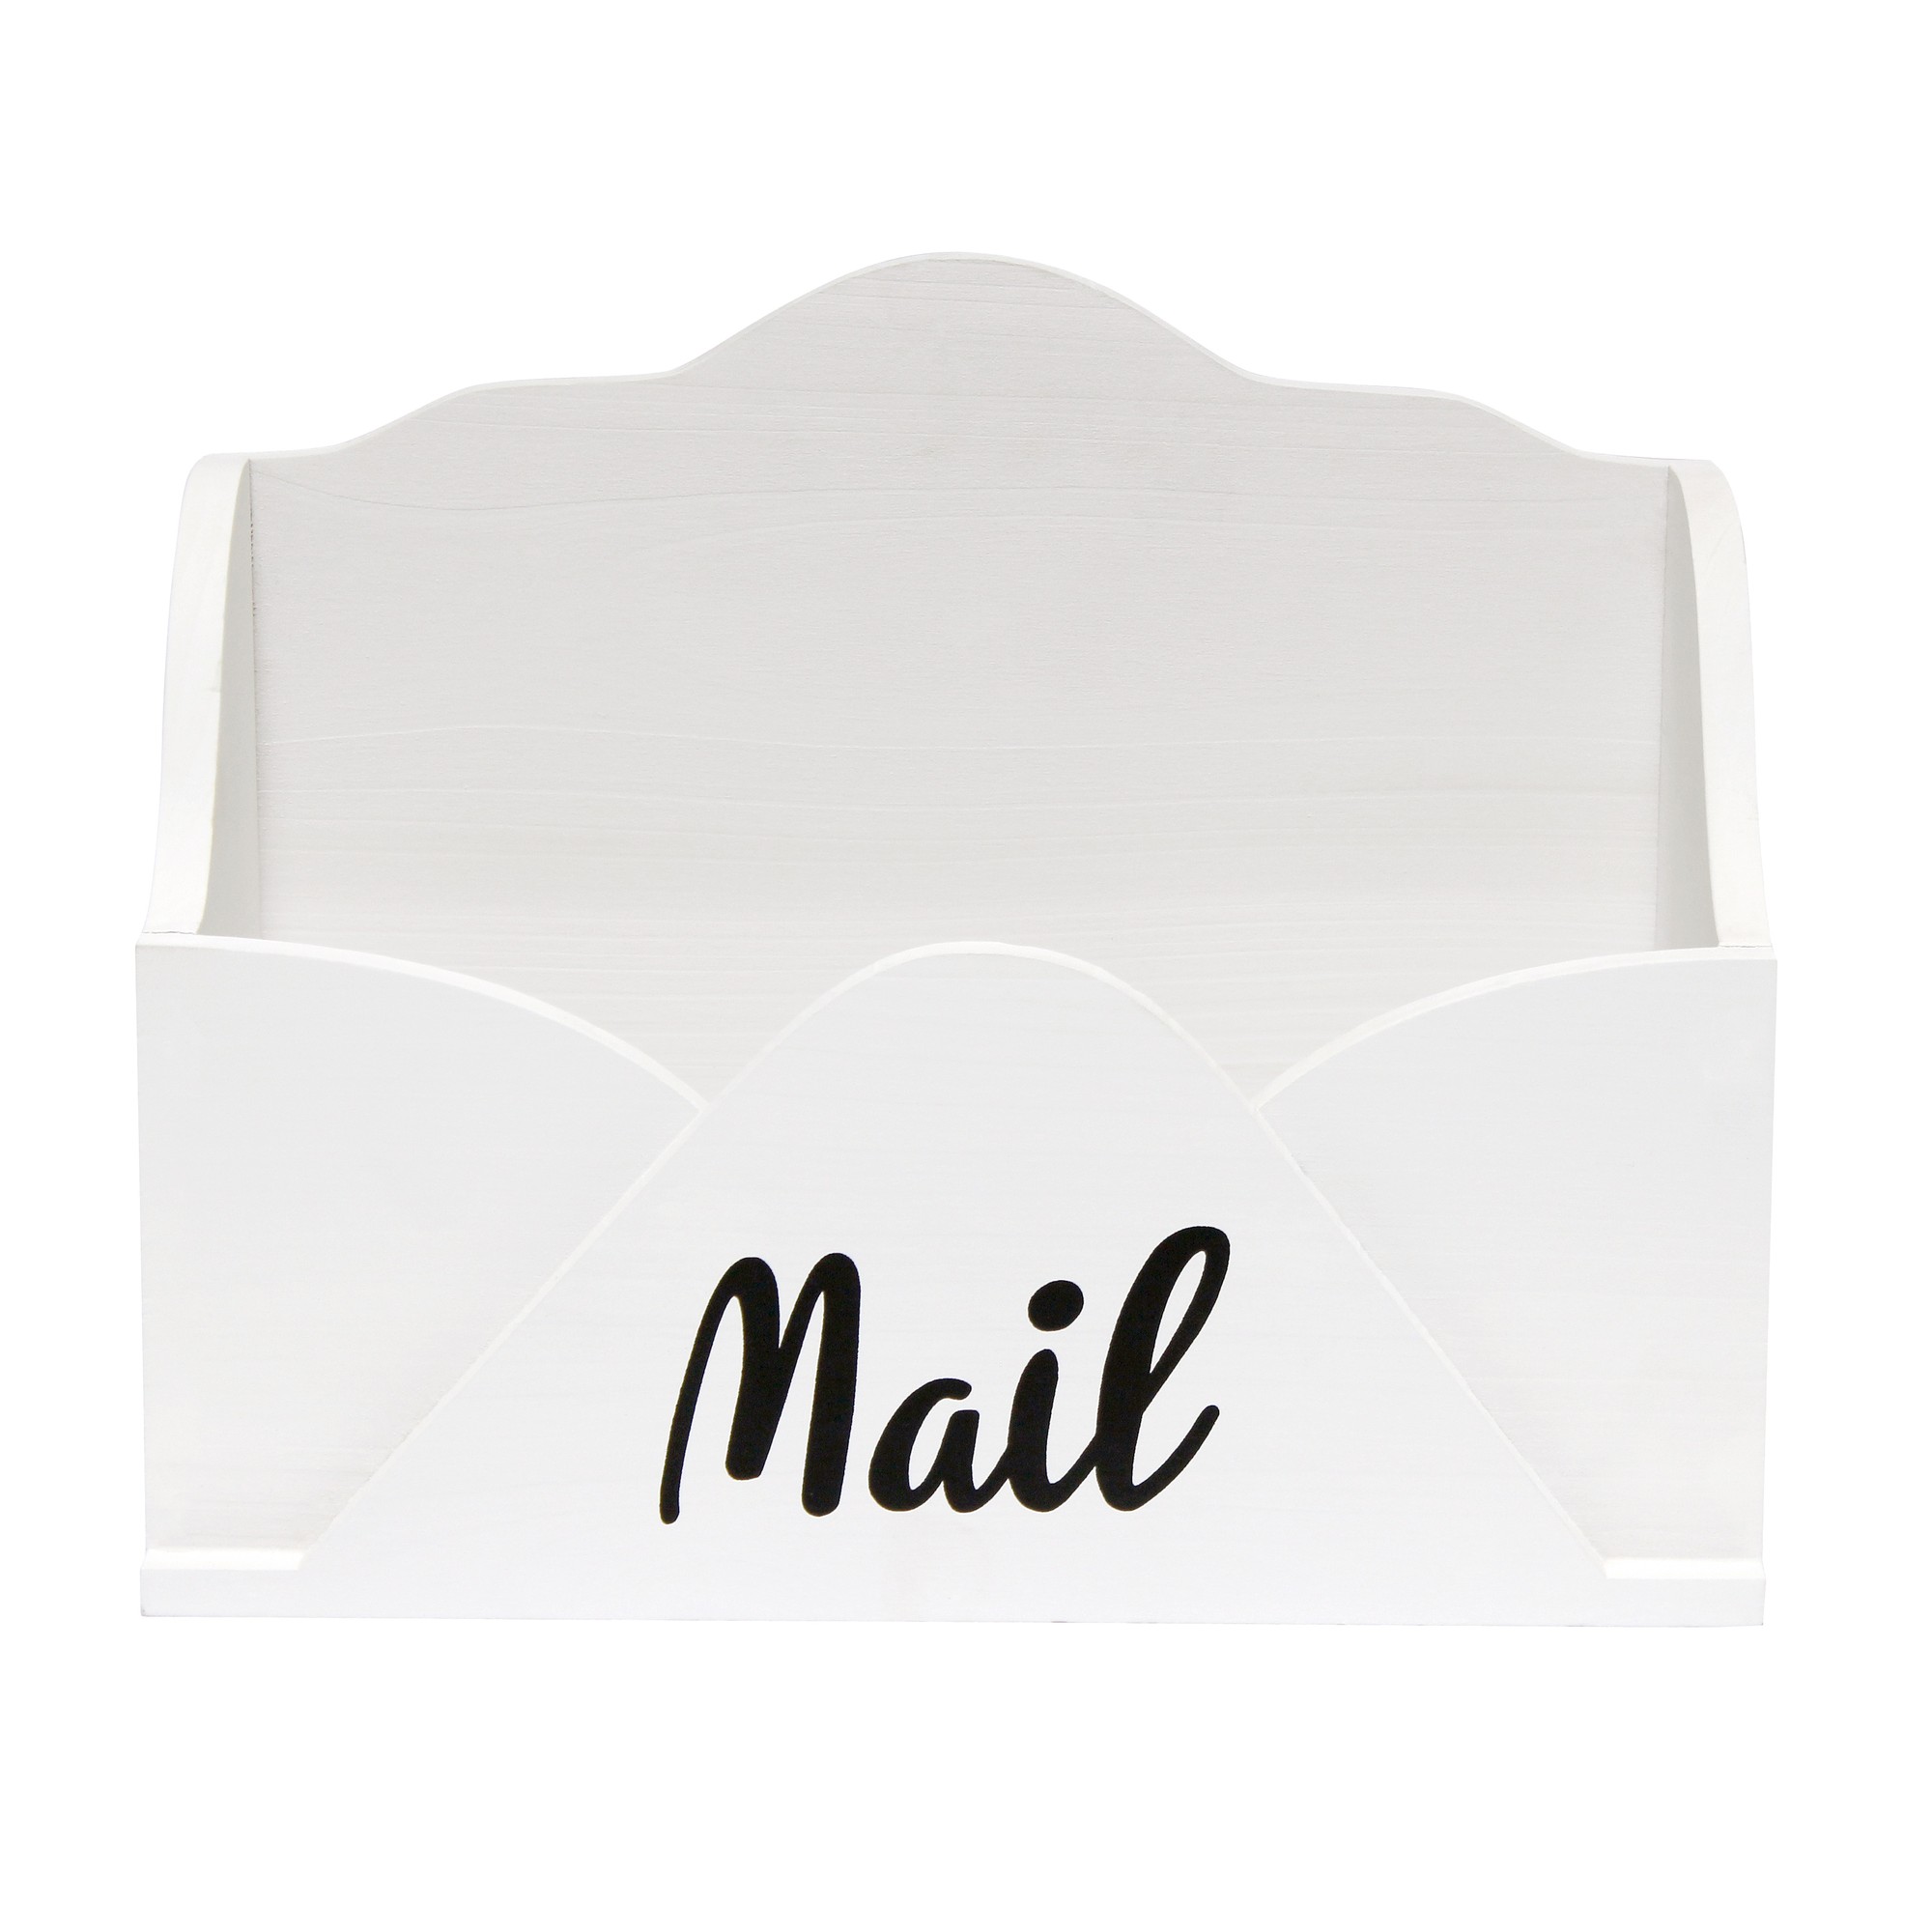 Desktop Letter Holder "Mail" Script in Blk, White